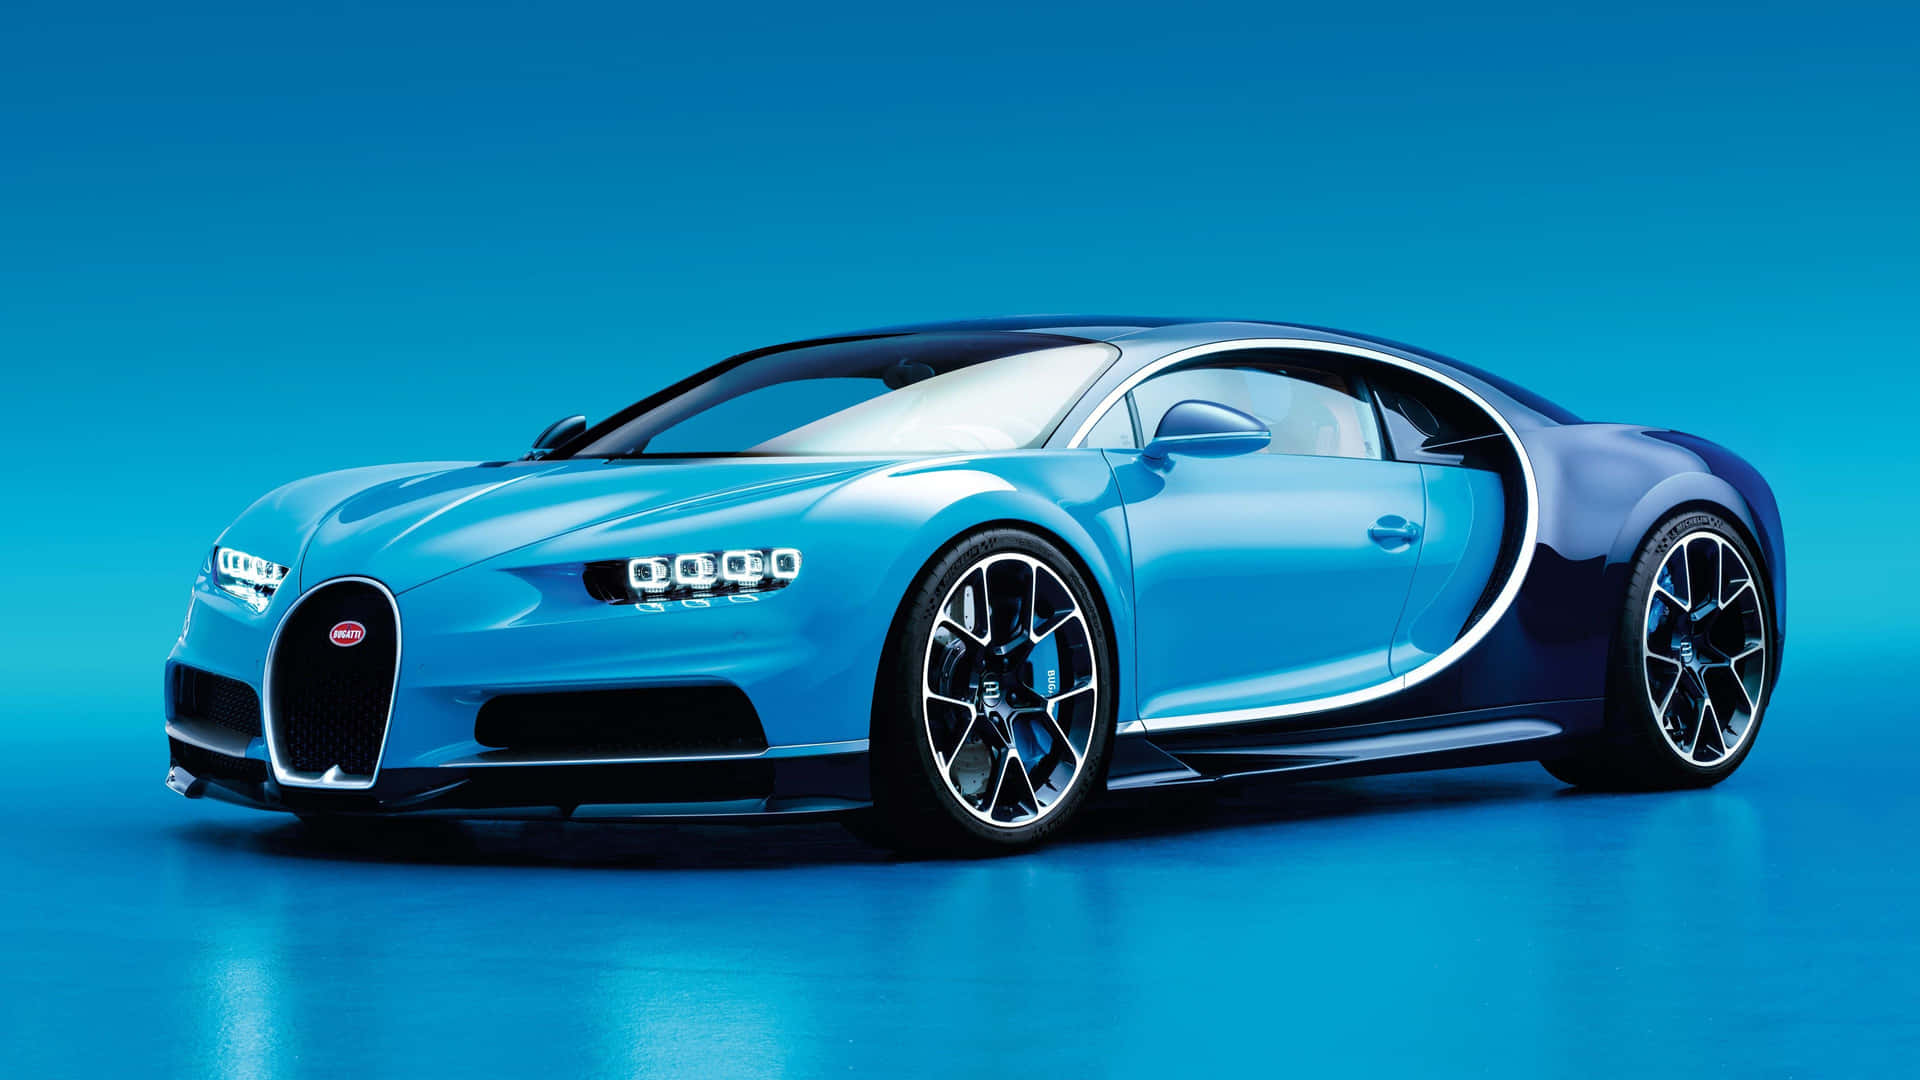 Supereo Limite - Veja O Impressionante Bugatti 4k Como Papel De Parede De Computador Ou Celular. Papel de Parede